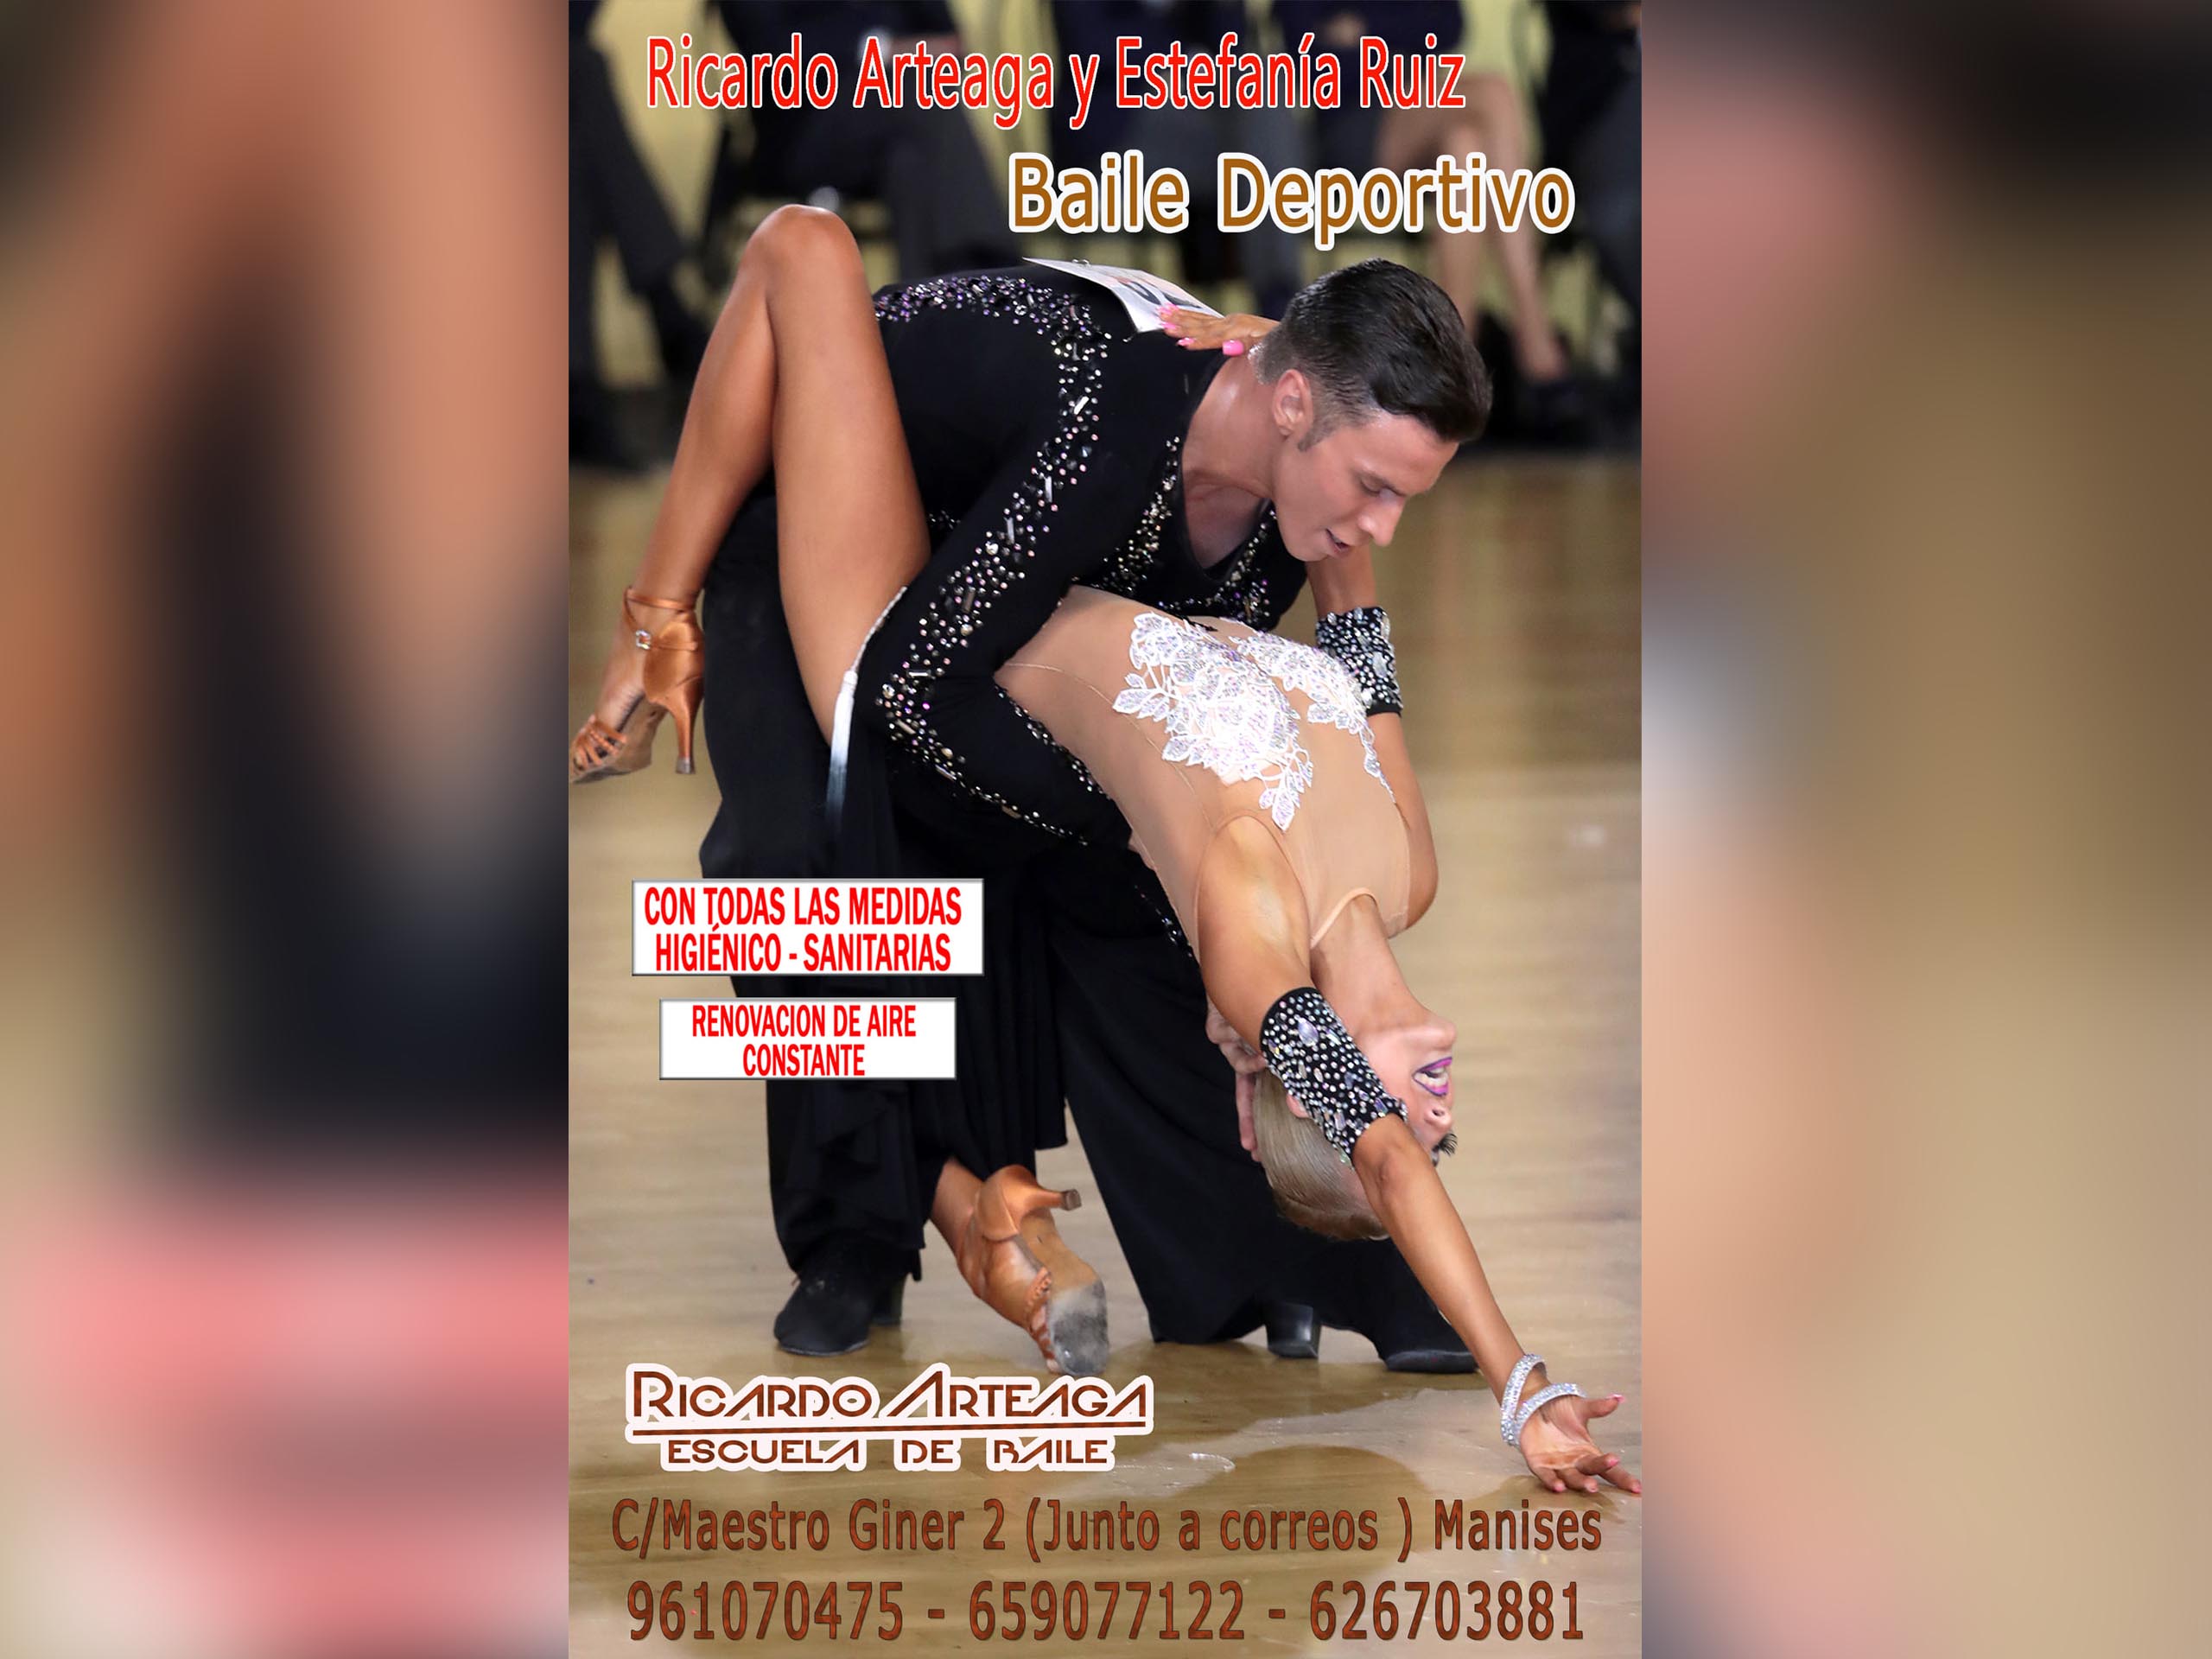 Escuela de baile Ricardo Arteaga